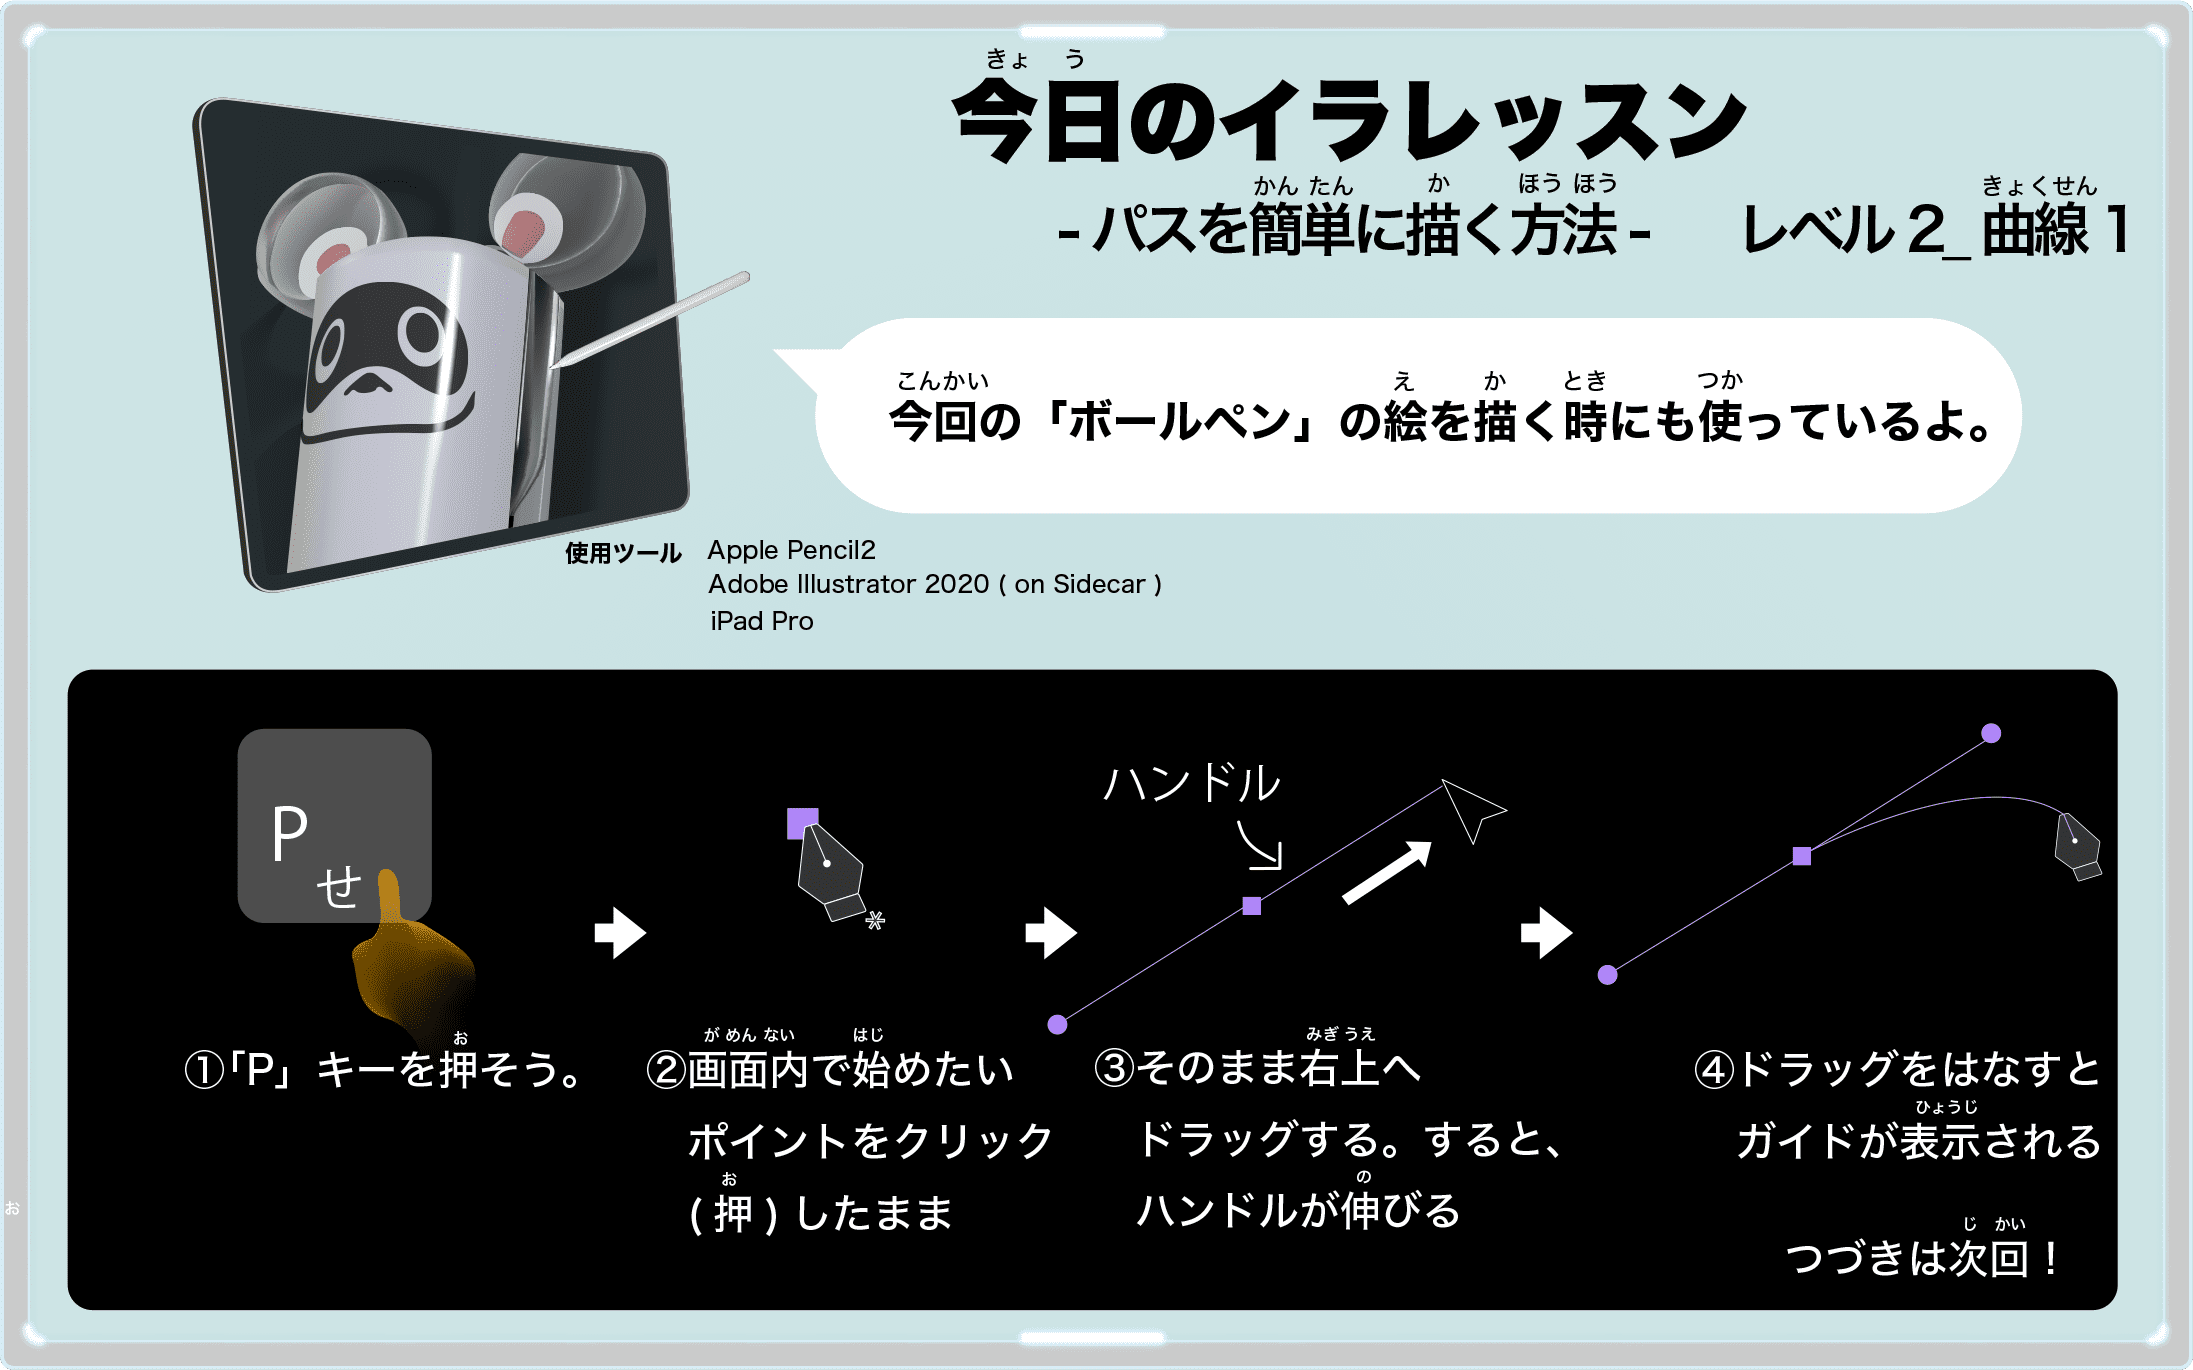 Nintendotokyo ニンテンドートウキョウ店内マップおすすめ12月状況